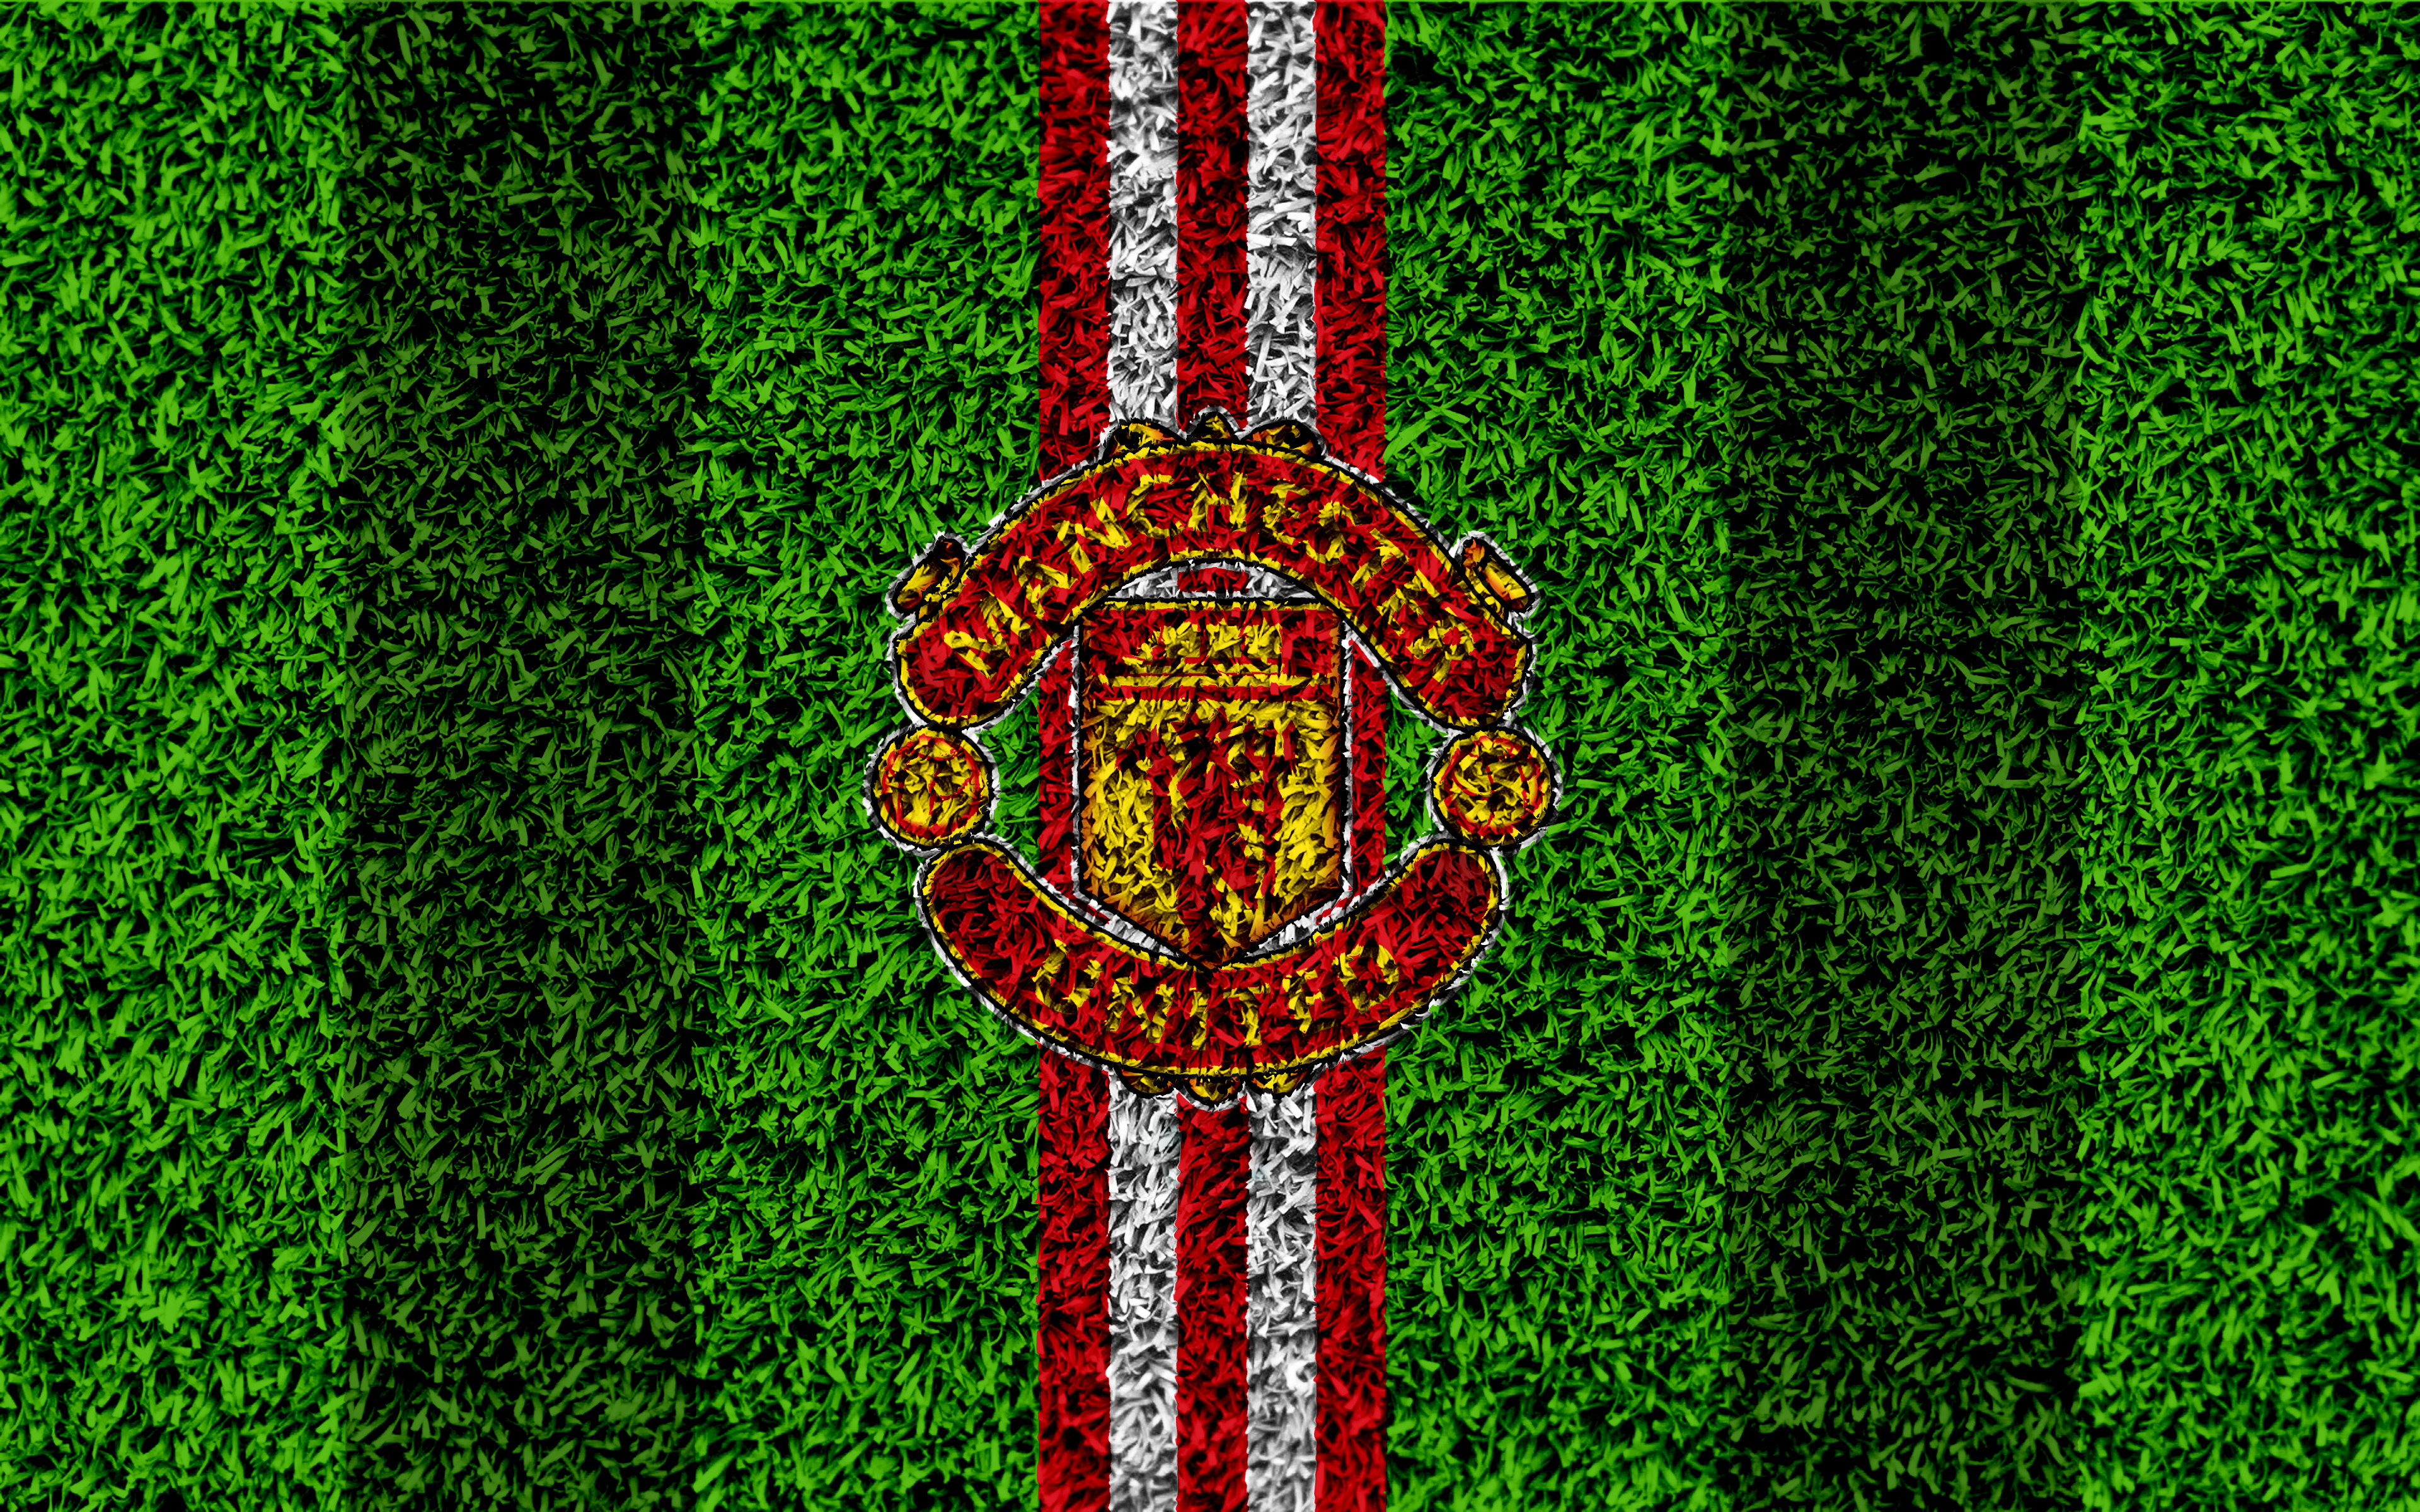 Handy-Wallpaper Sport, Fußball, Logo, Manchester United kostenlos herunterladen.